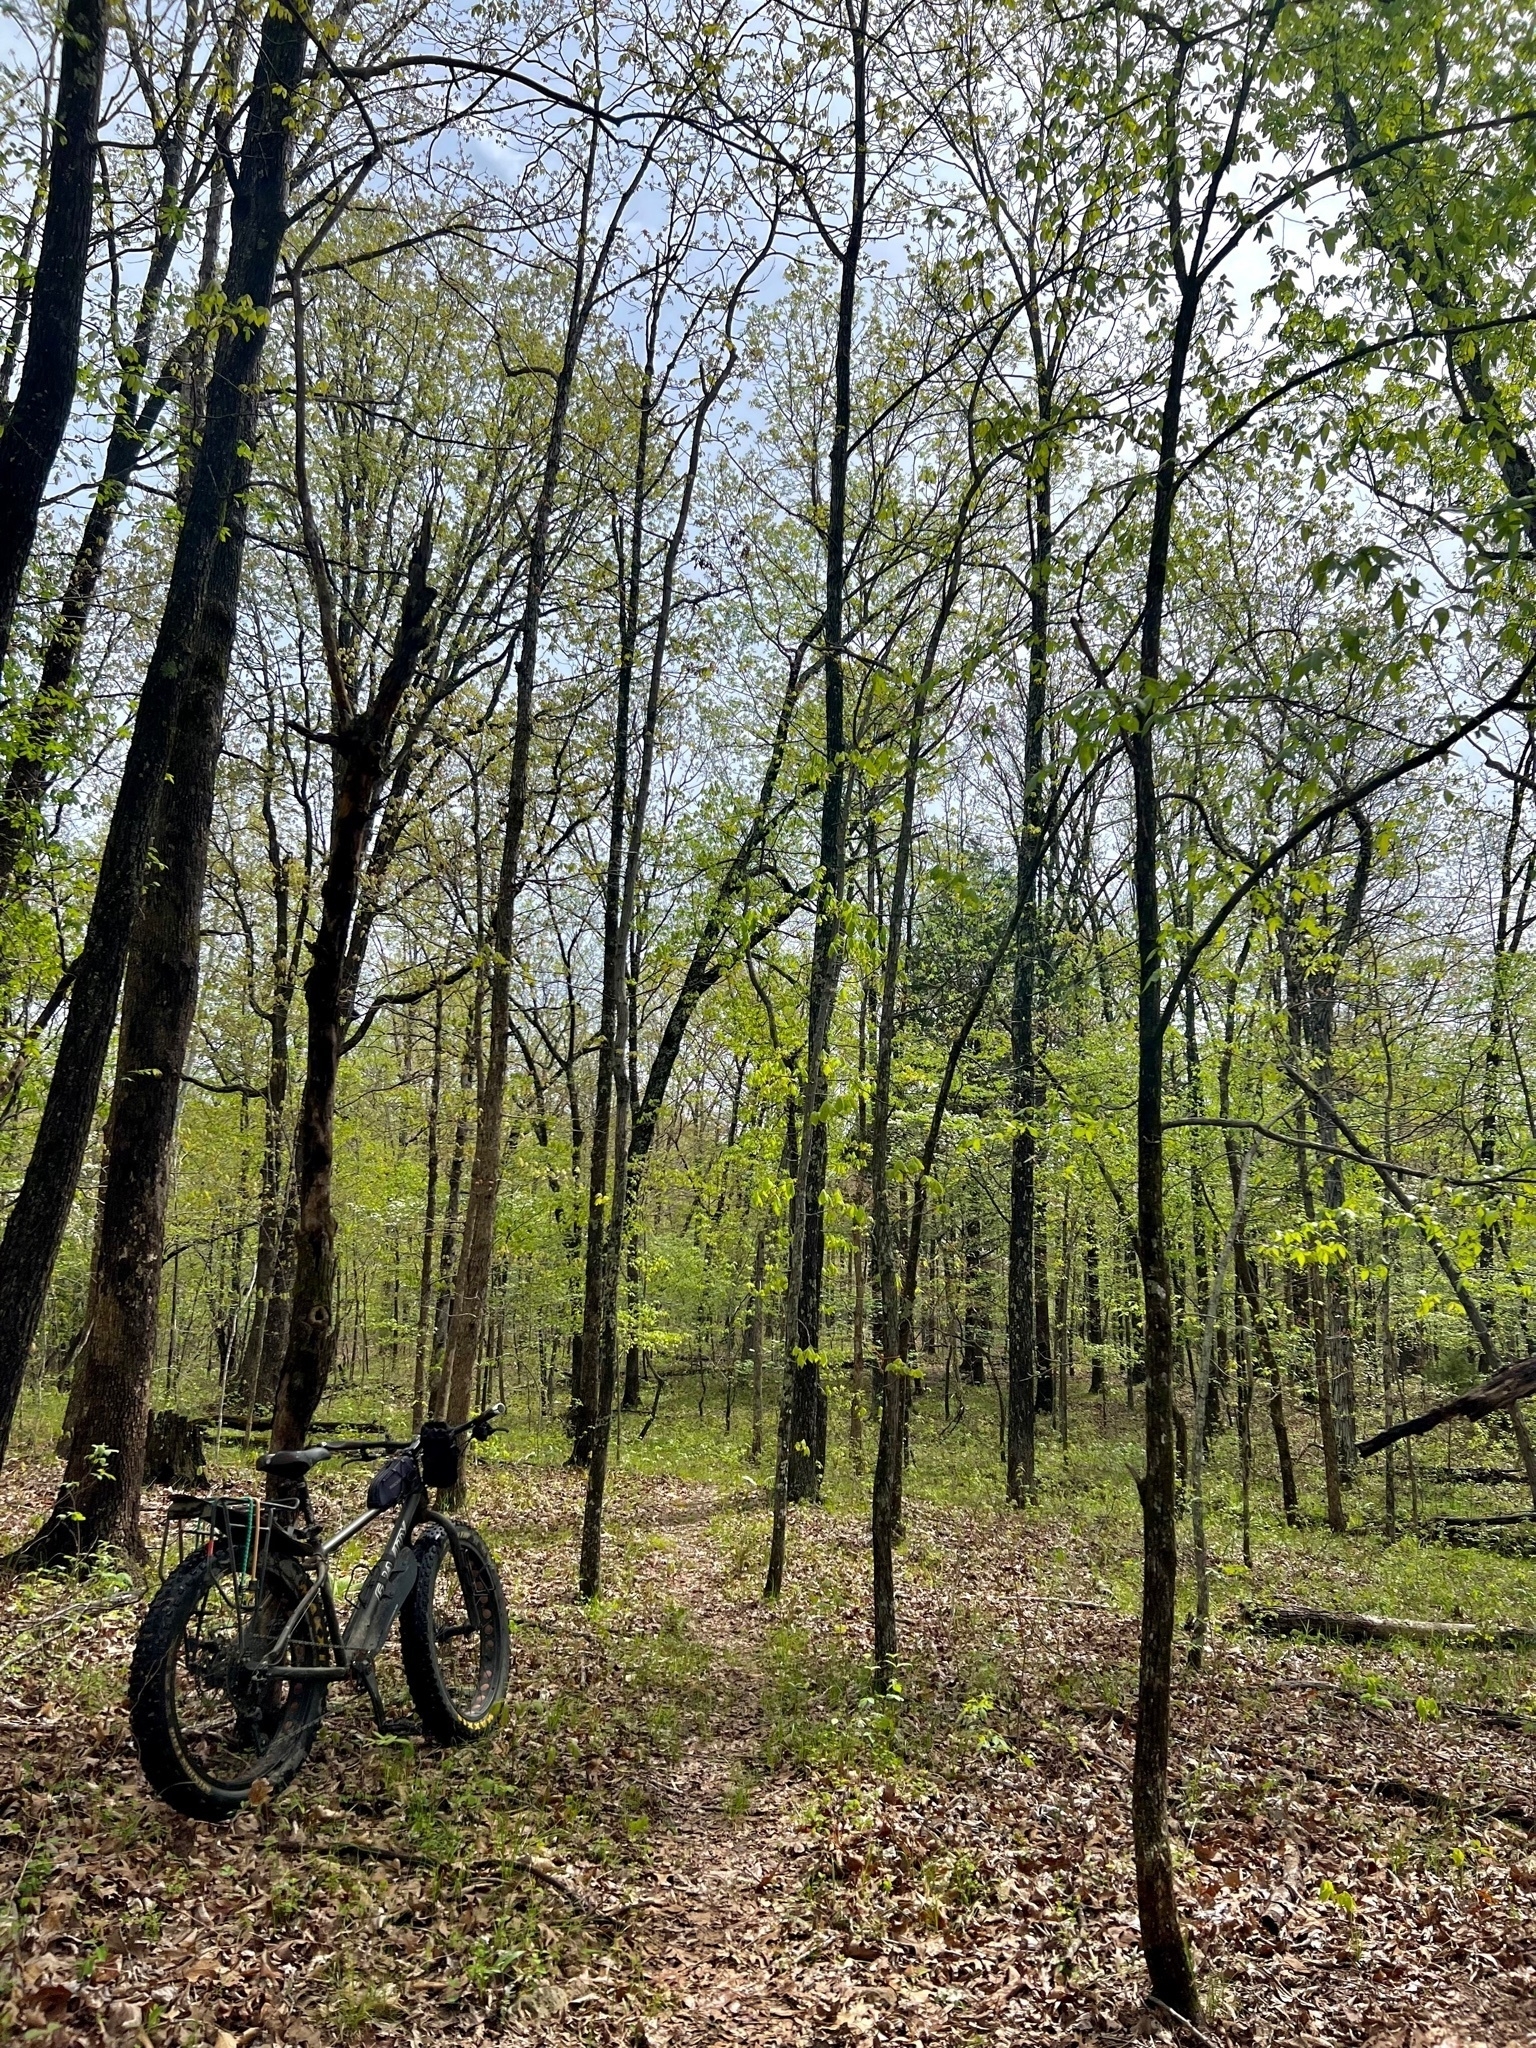 A fat tire bike leans against a tree near a trail through the woods